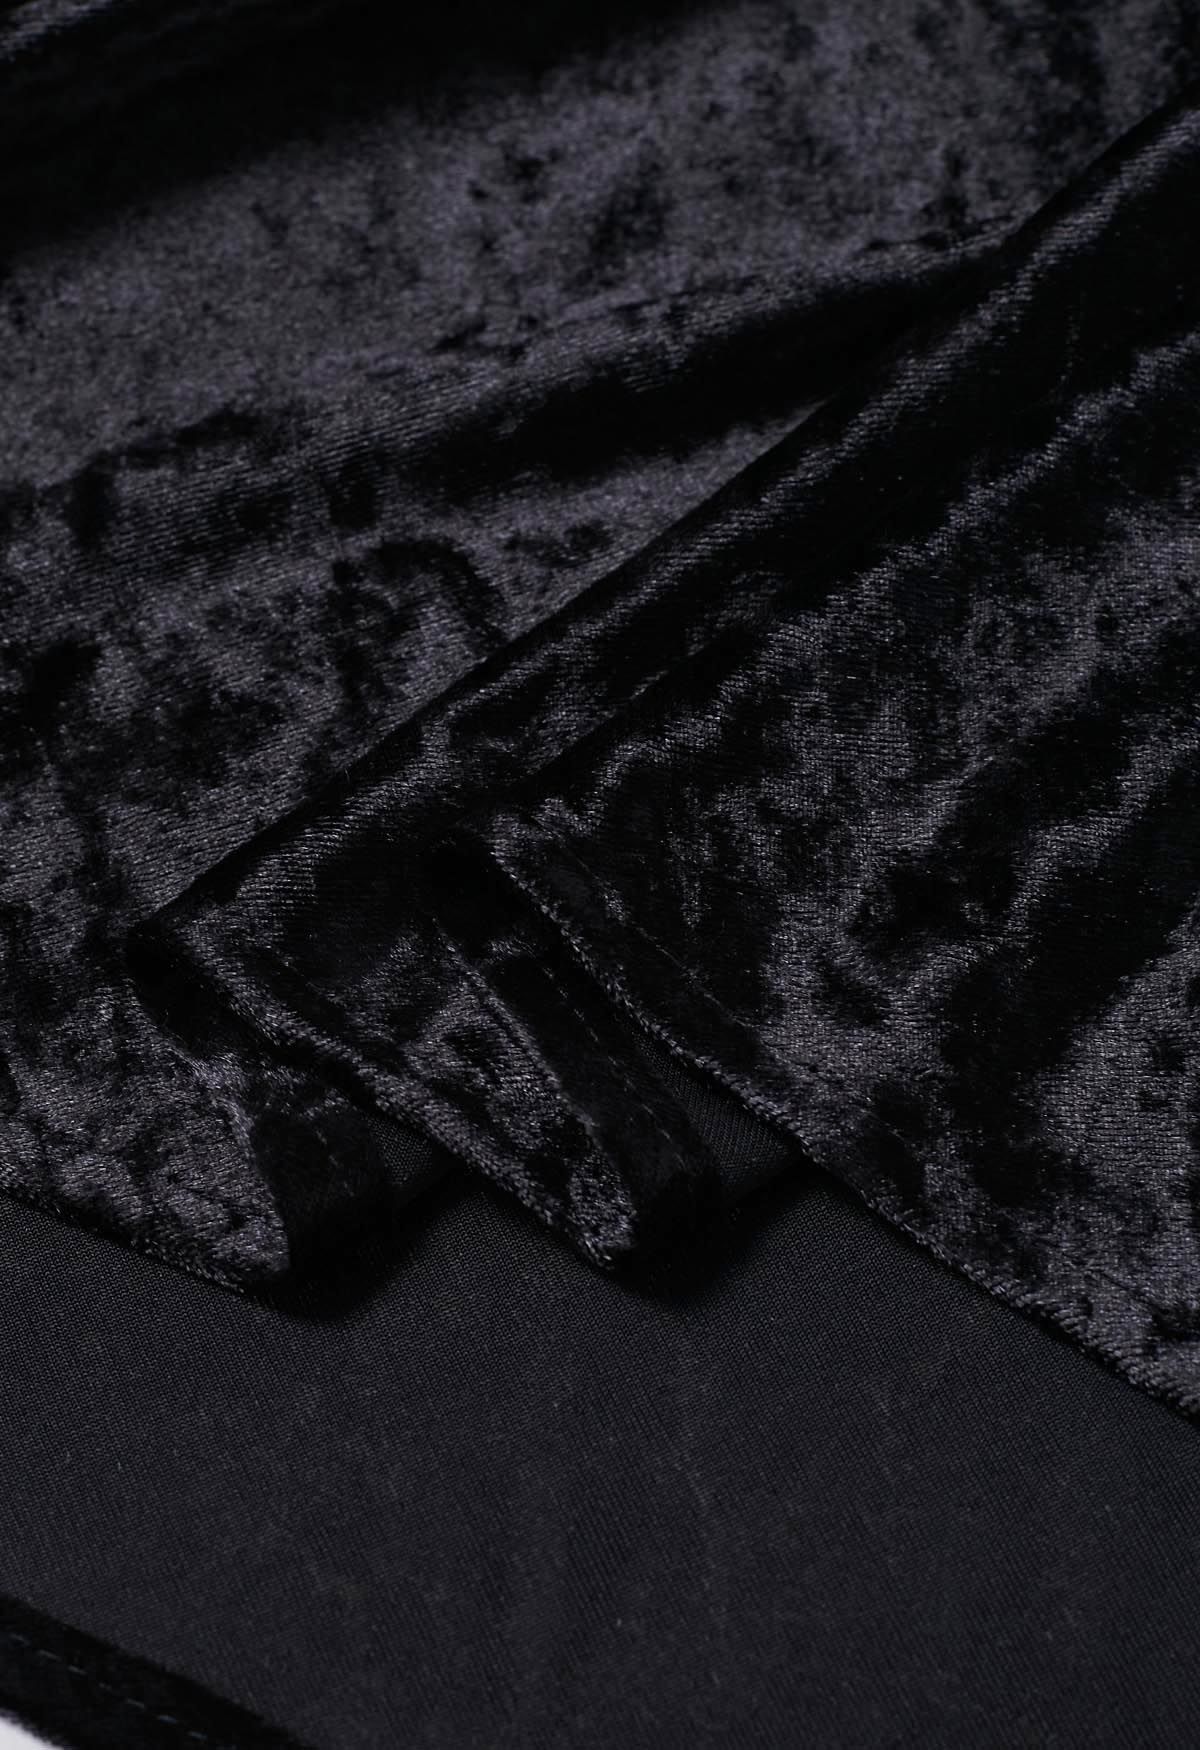 Soft Velvet High-Waist Maxi Skirt in Black